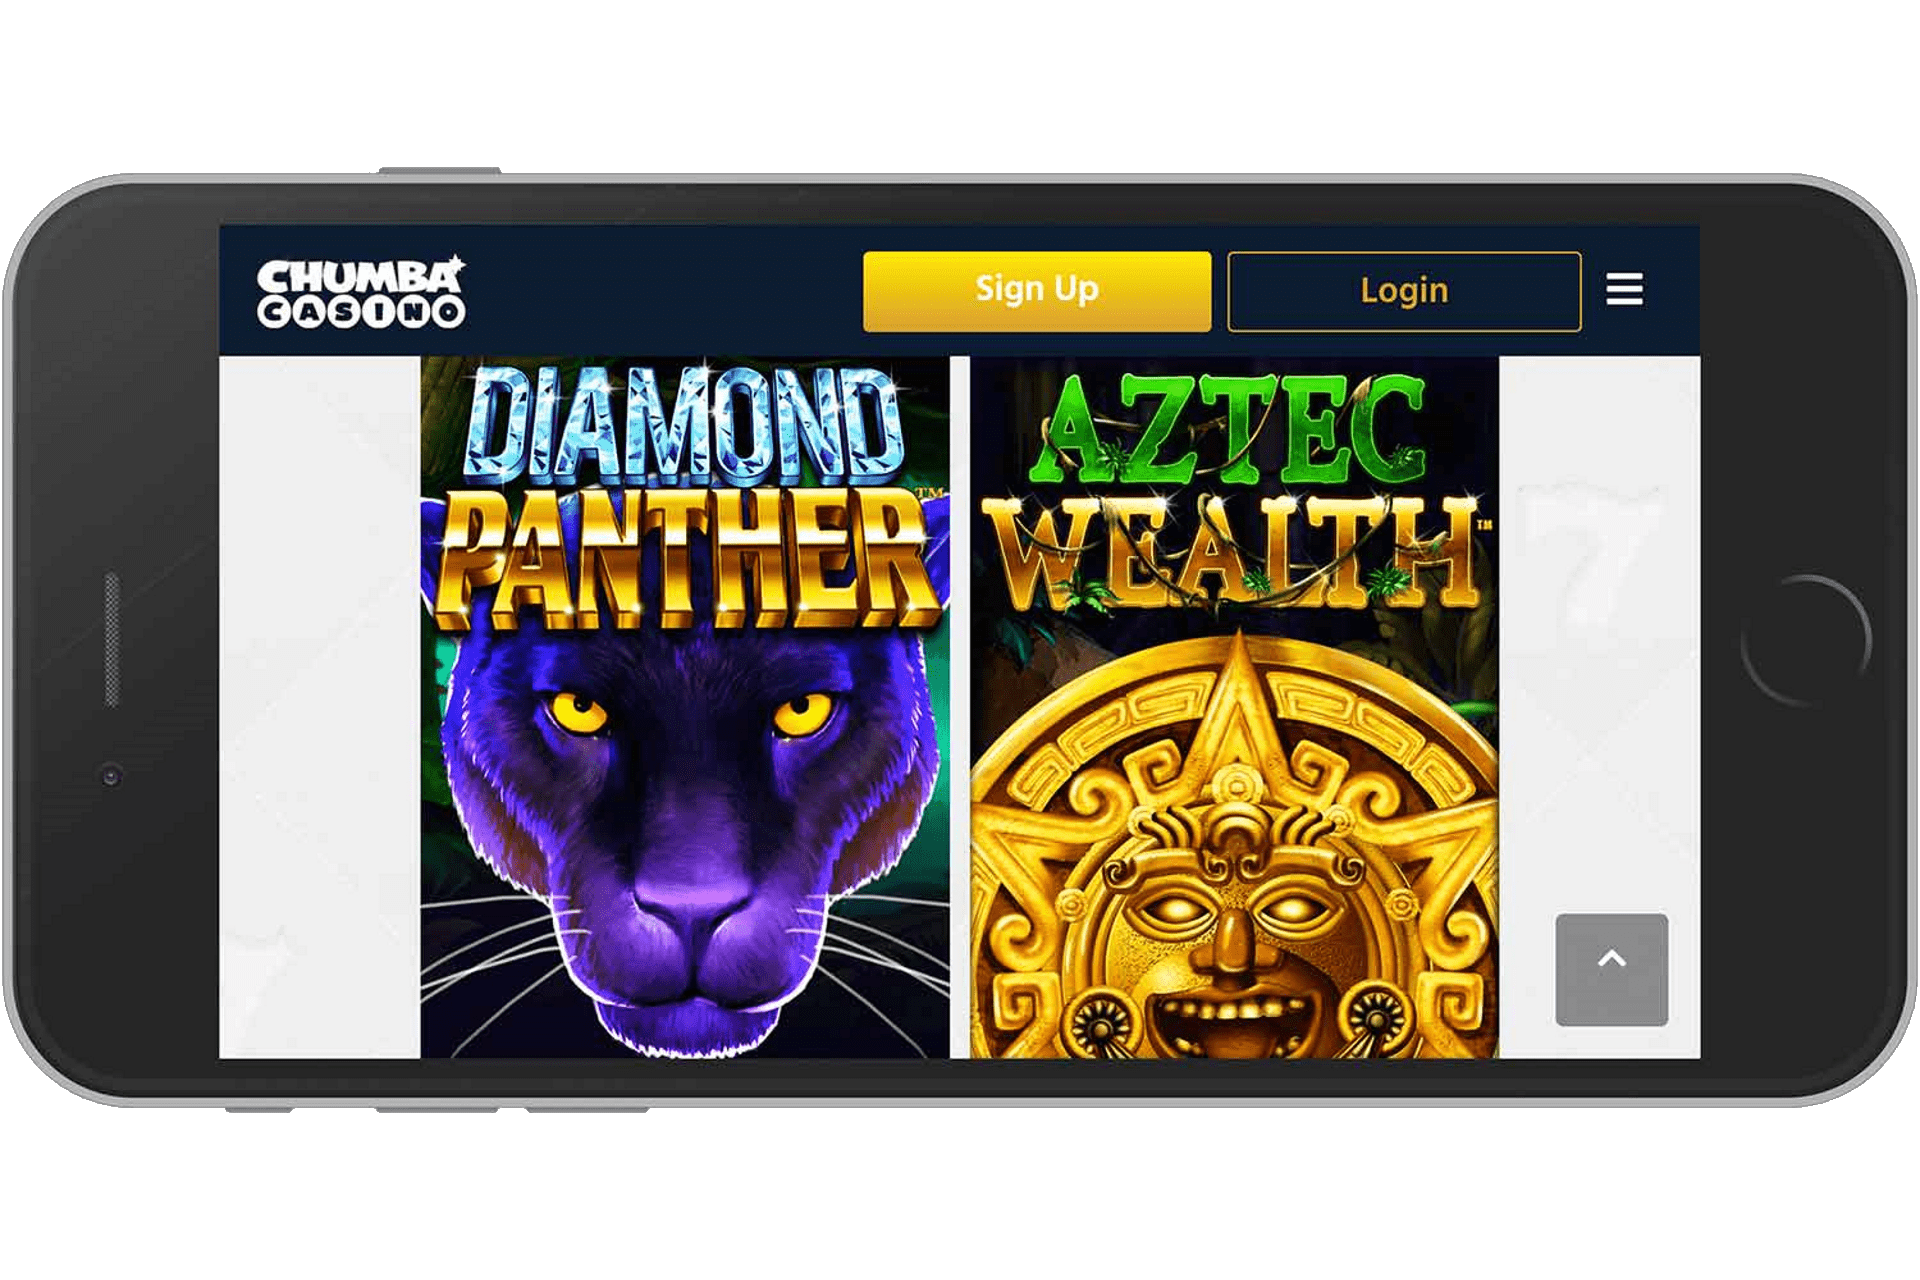 chumba casino android app